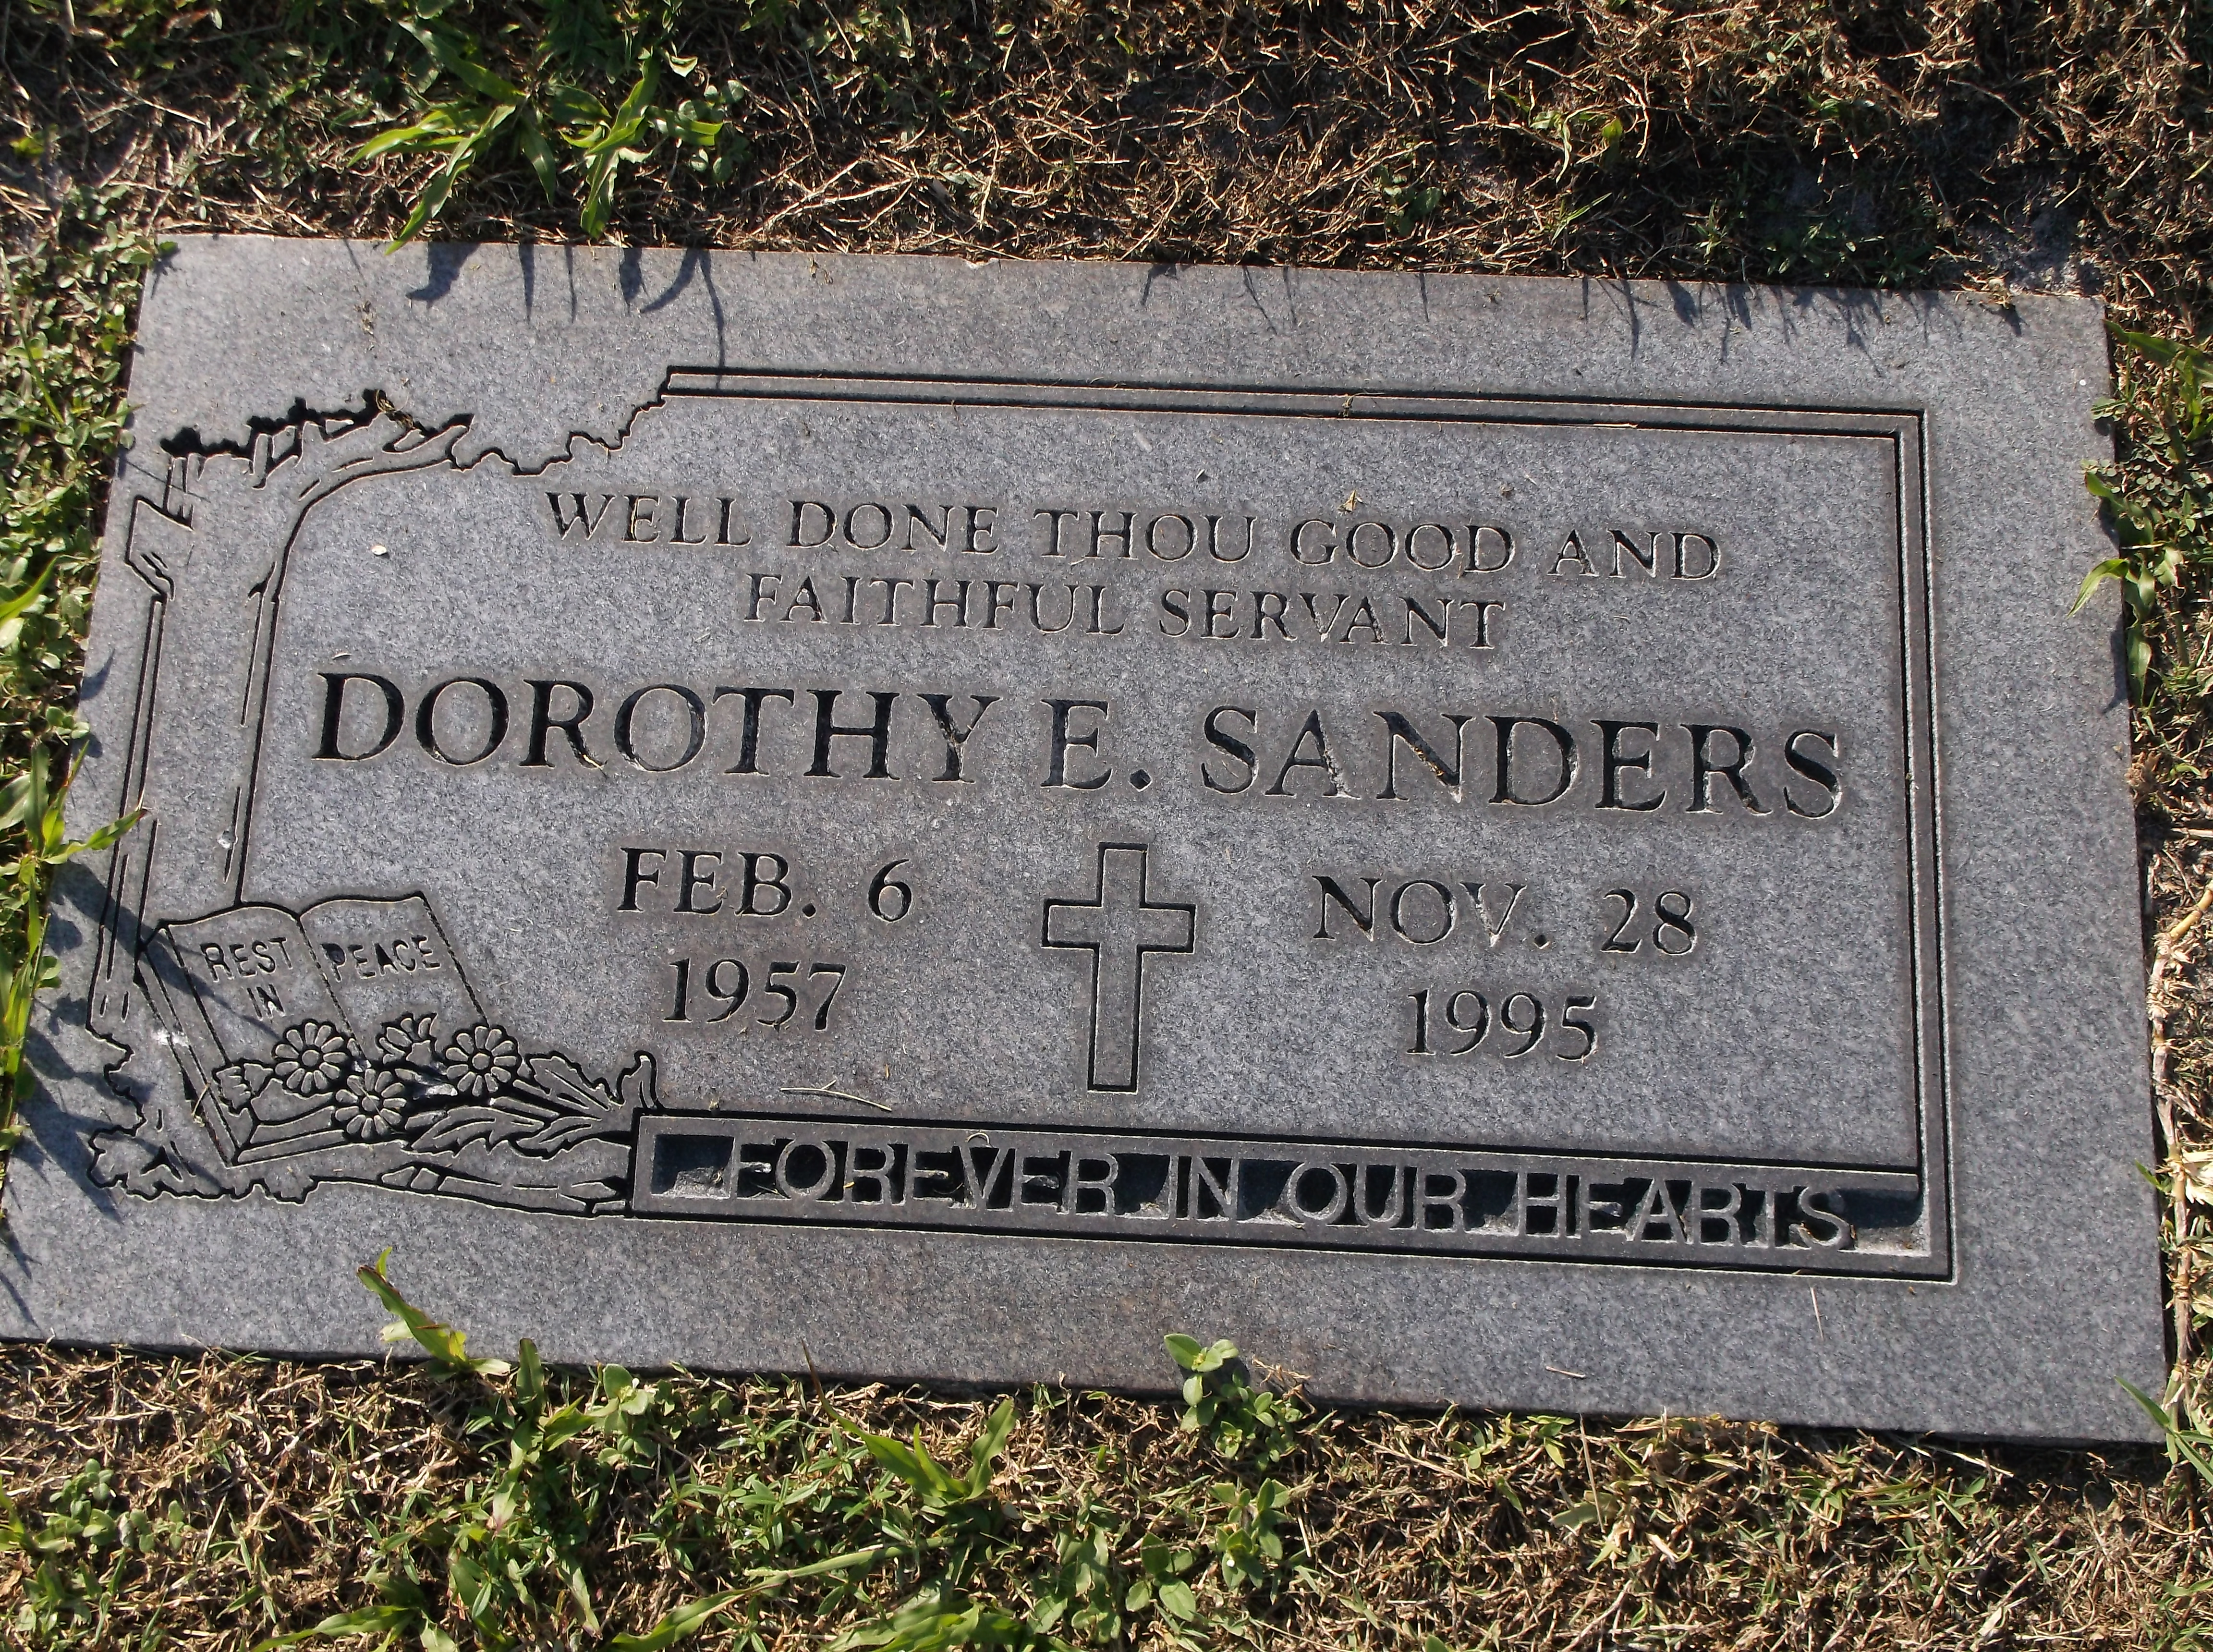 Dorothy E Sanders